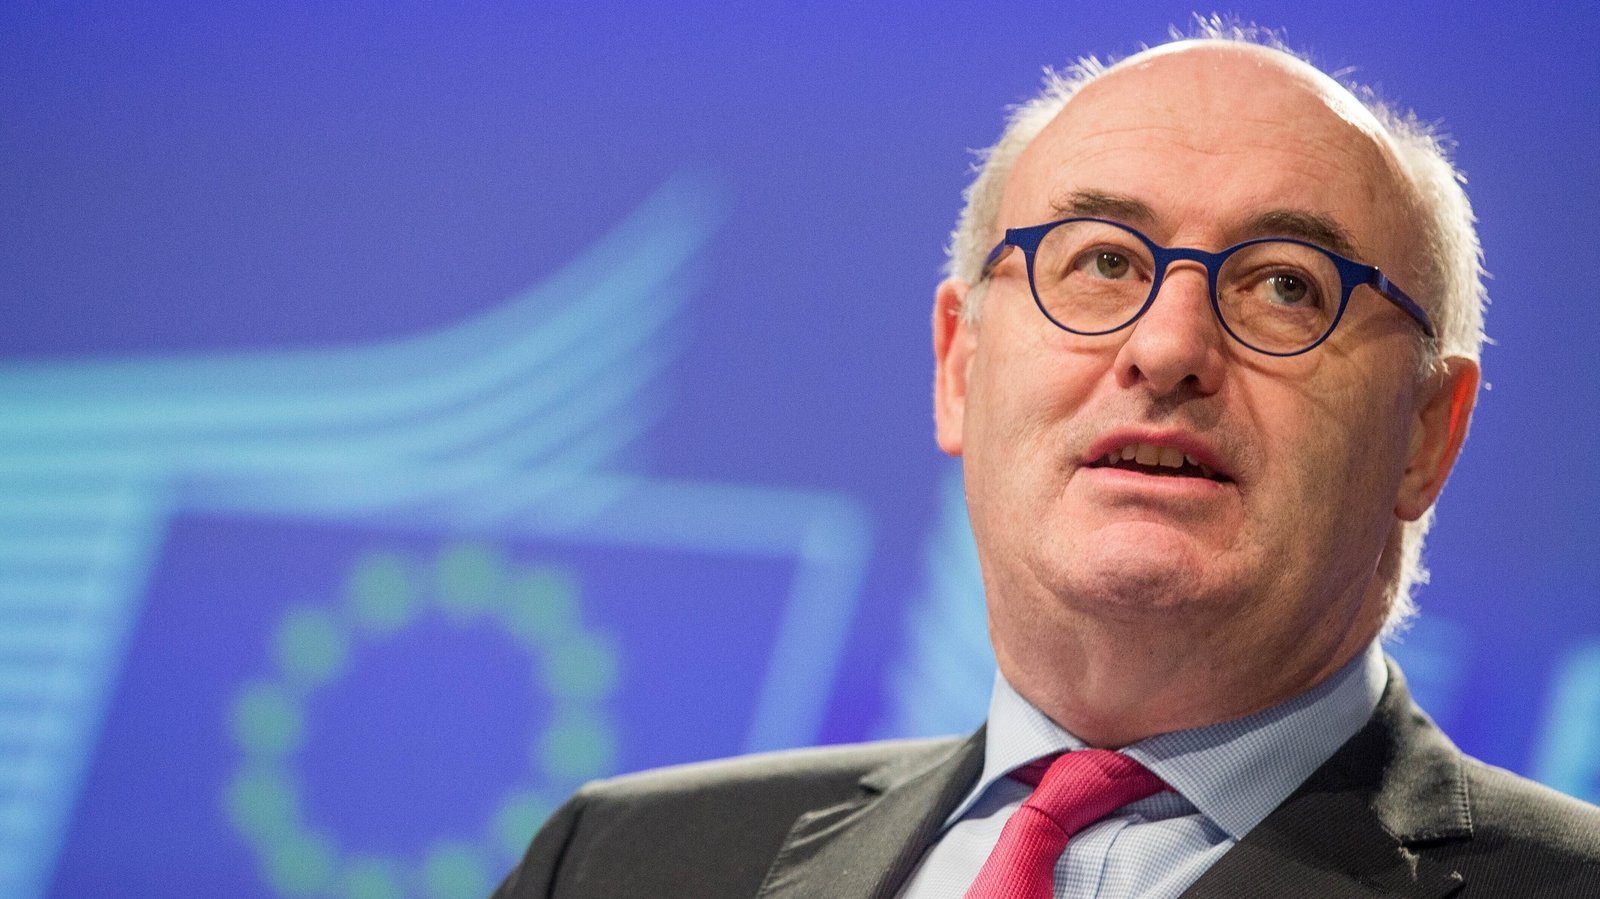 EU Commissioner Phil Hogan not resigning